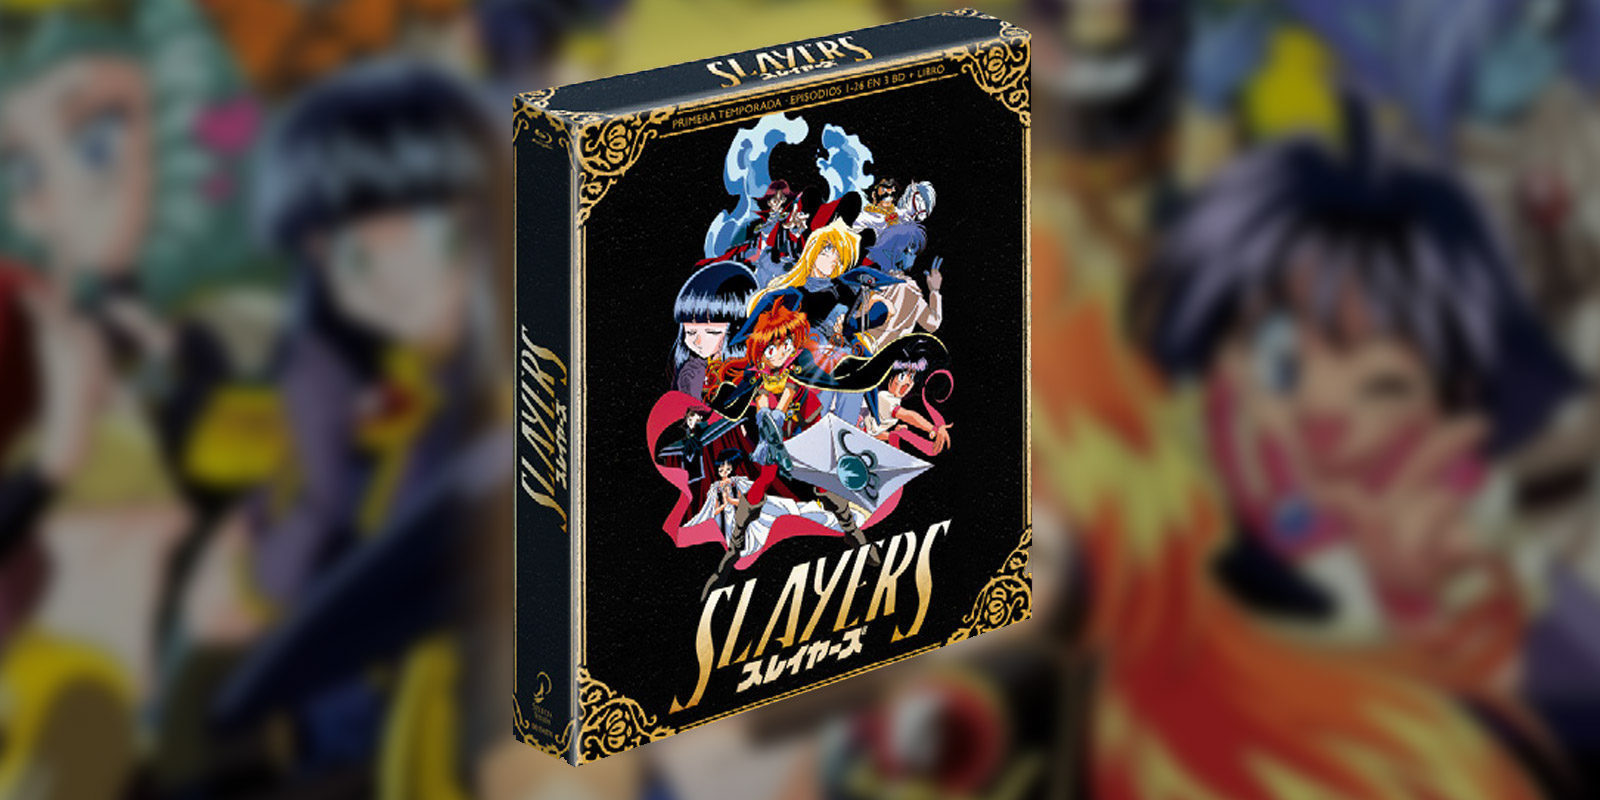 El anime 'Slayers' (Reena y Gaudy) deja ver un tráiler de su edición española en Blu-ray